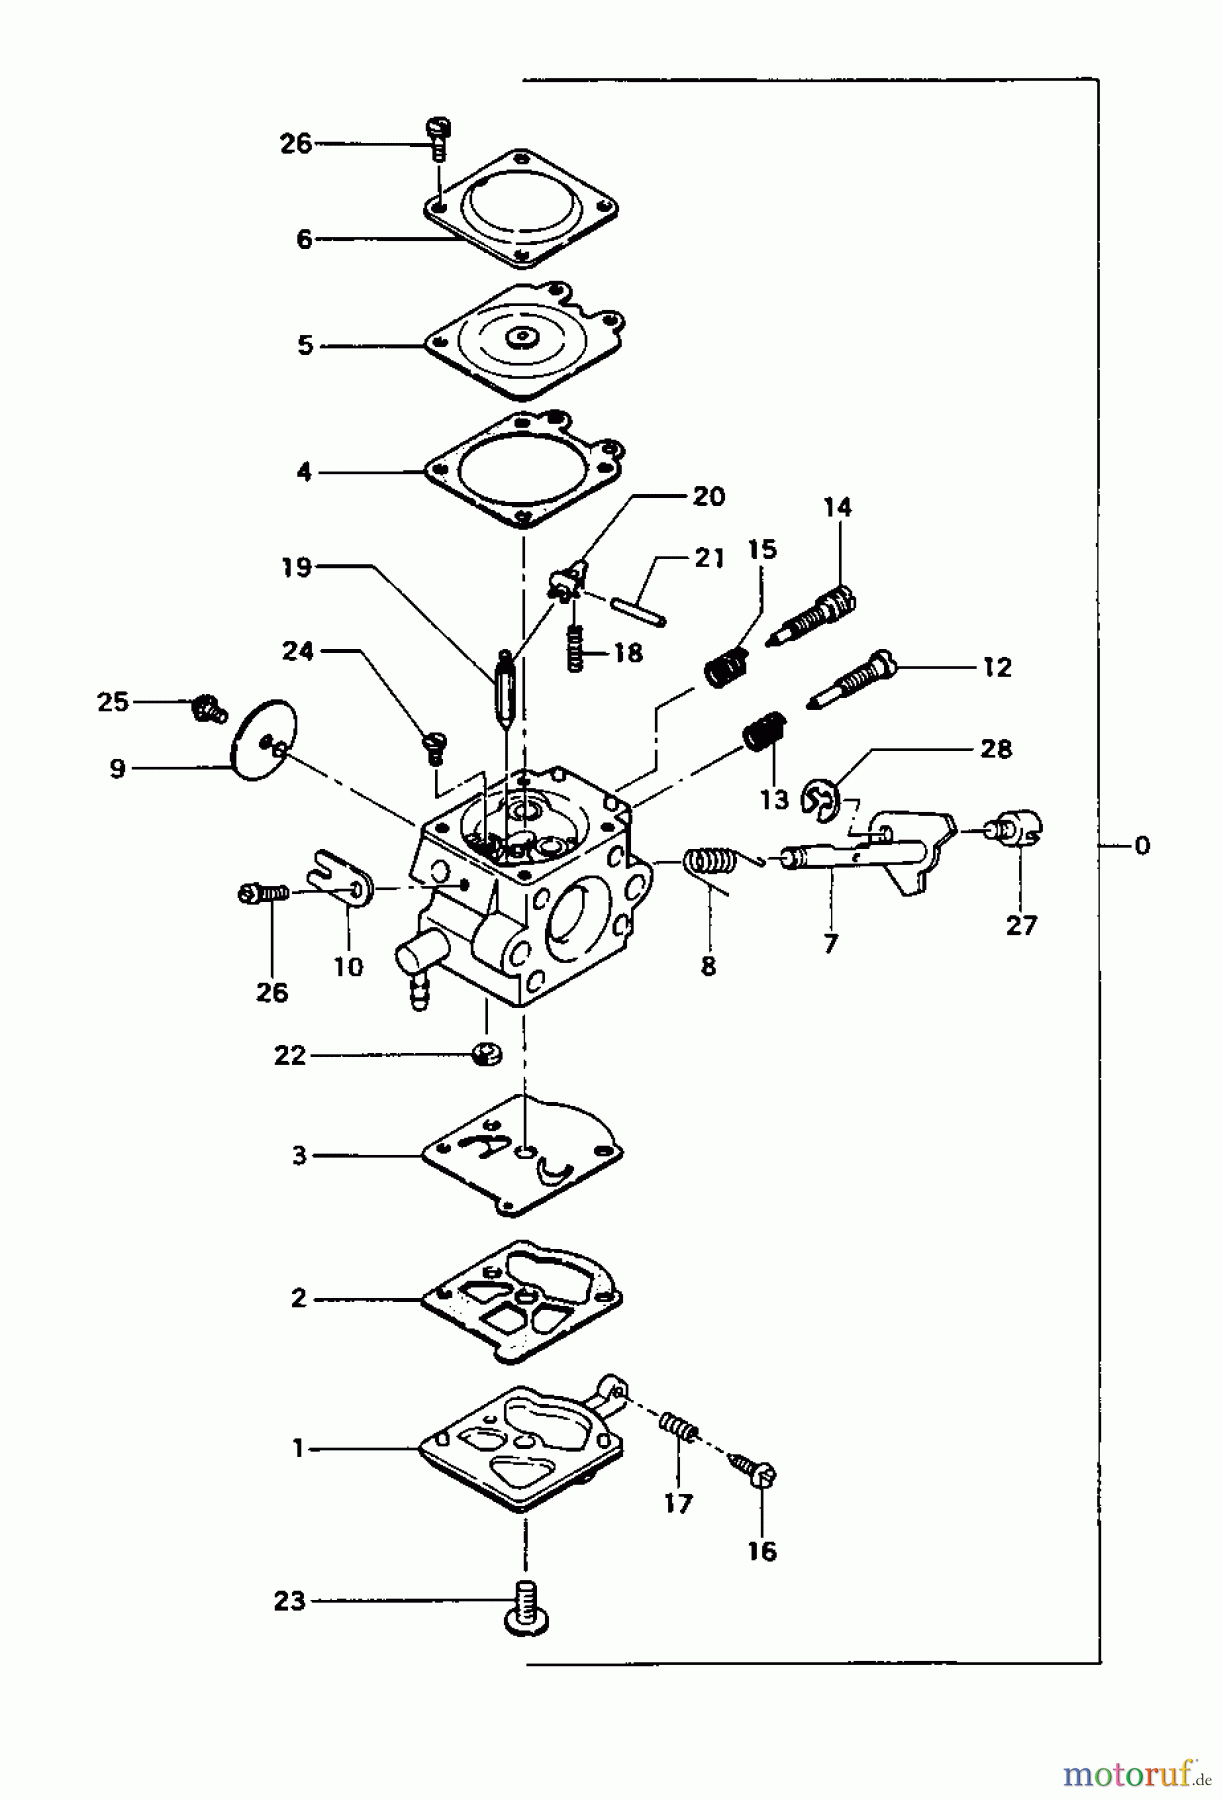  Tanaka Erdbohrer TIA-305 - Tanaka Power Auger Carburetor